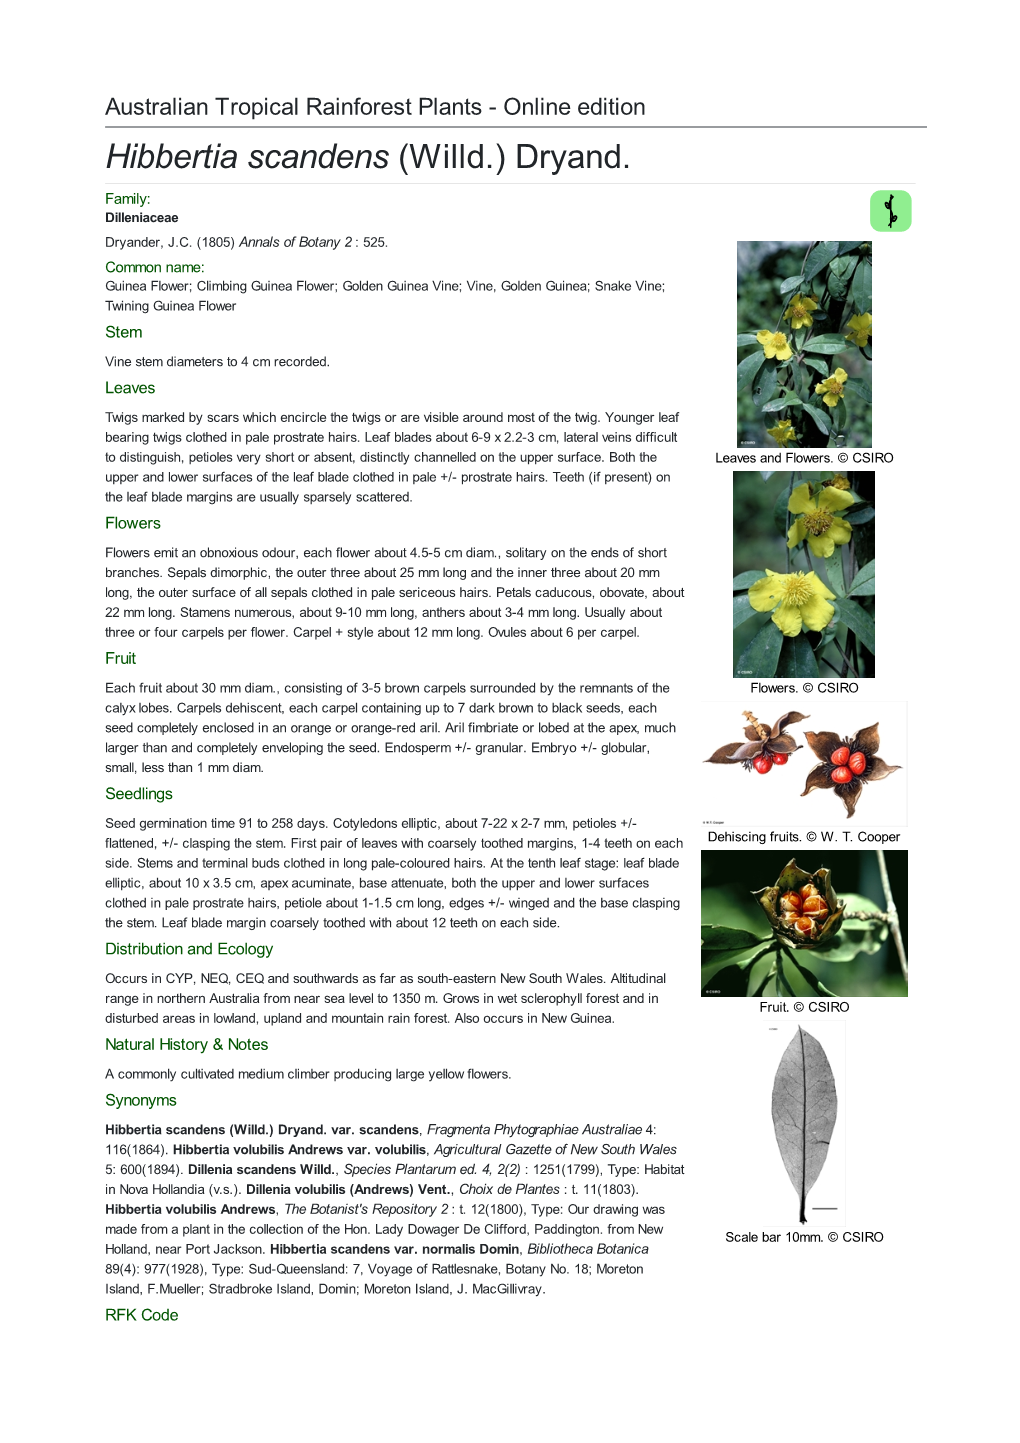 Hibbertia Scandens (Willd.) Dryand